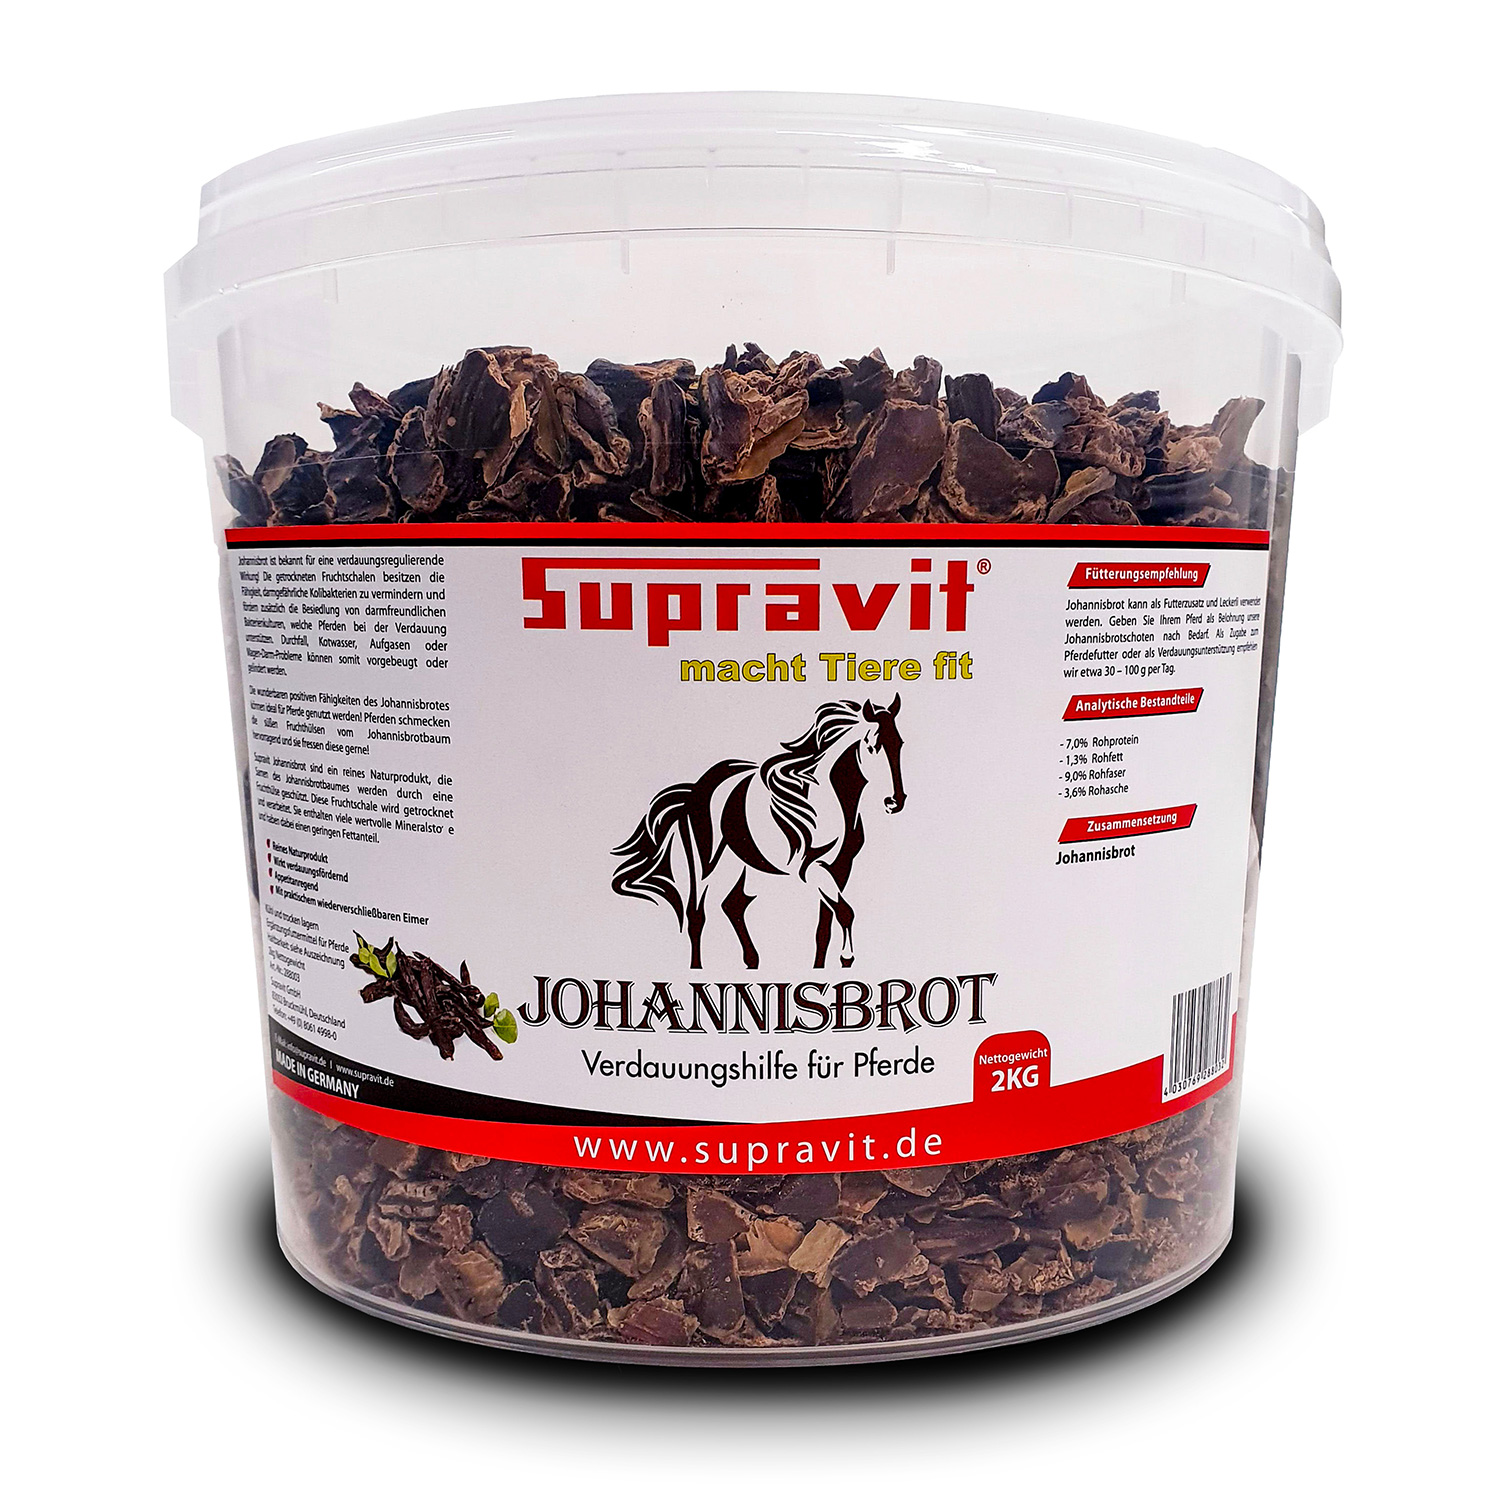 Supravit Johannisbrot 2 kg - Verdauungshilfe für Pferde